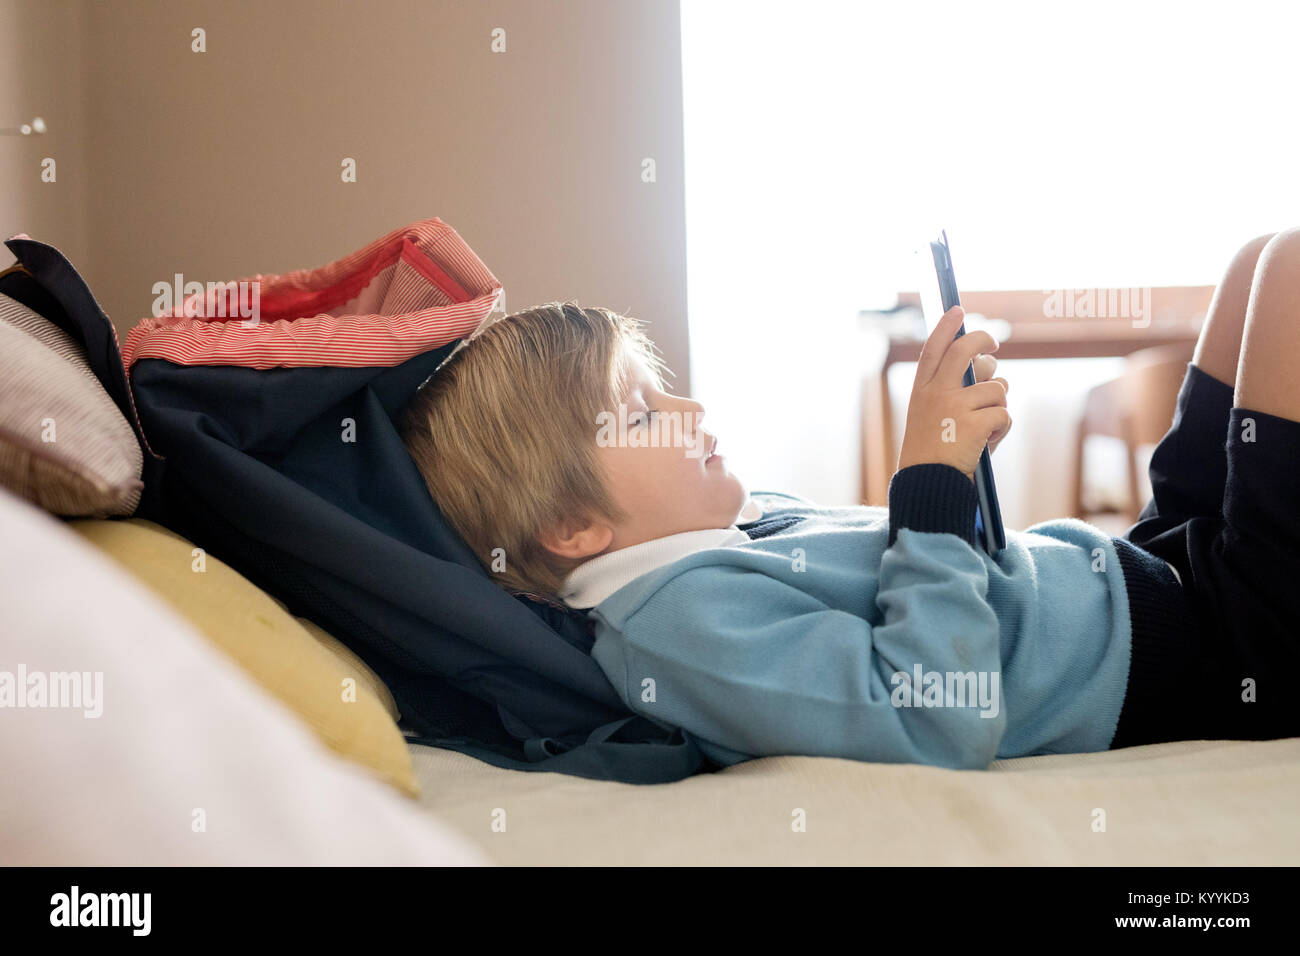 Boy utilizzando digitale compressa nella camera da letto in camera da letto Foto Stock